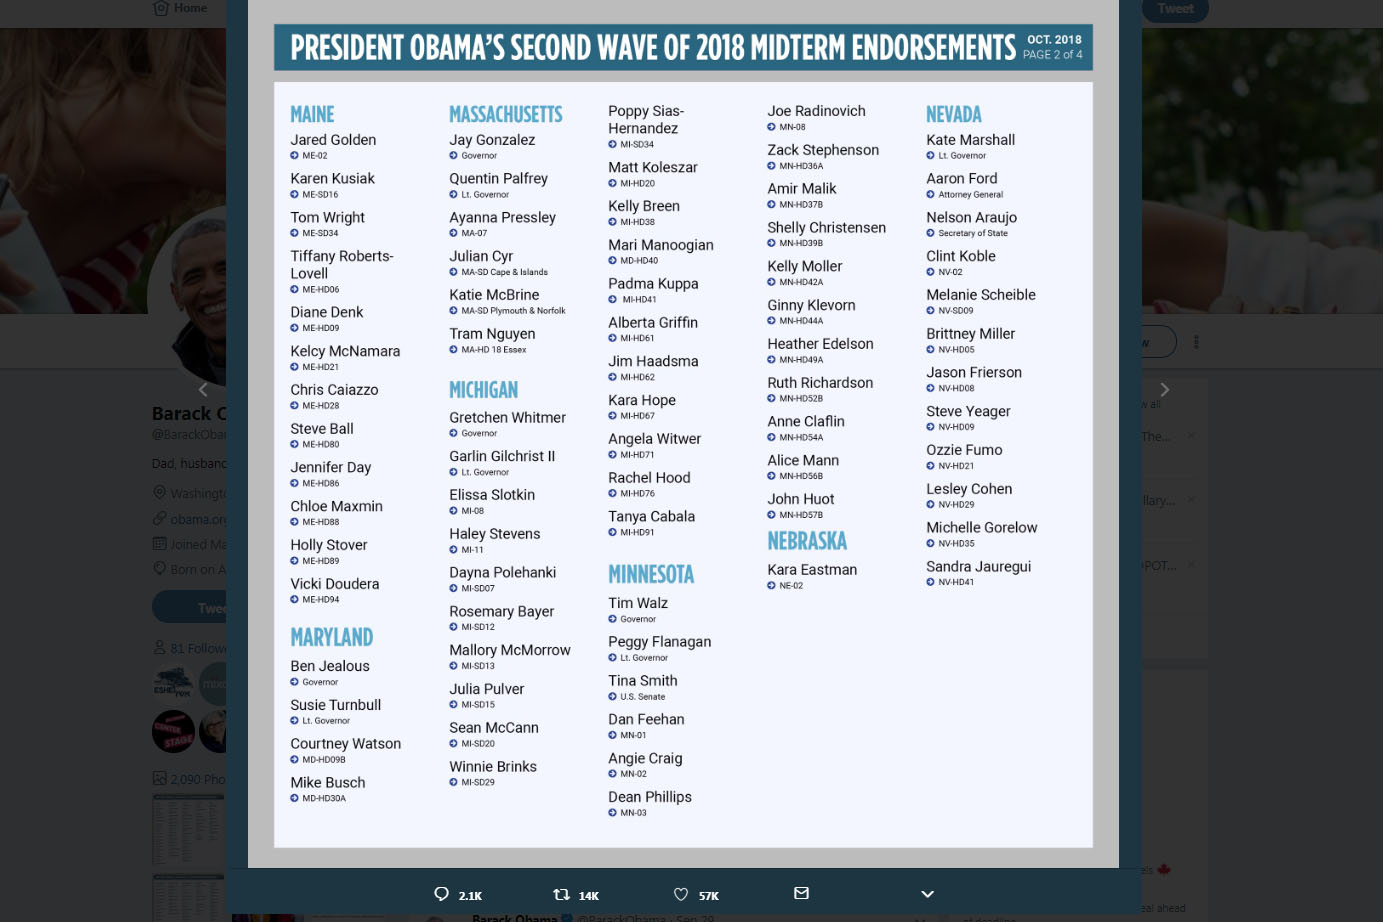 Obama's Democratic endorsements